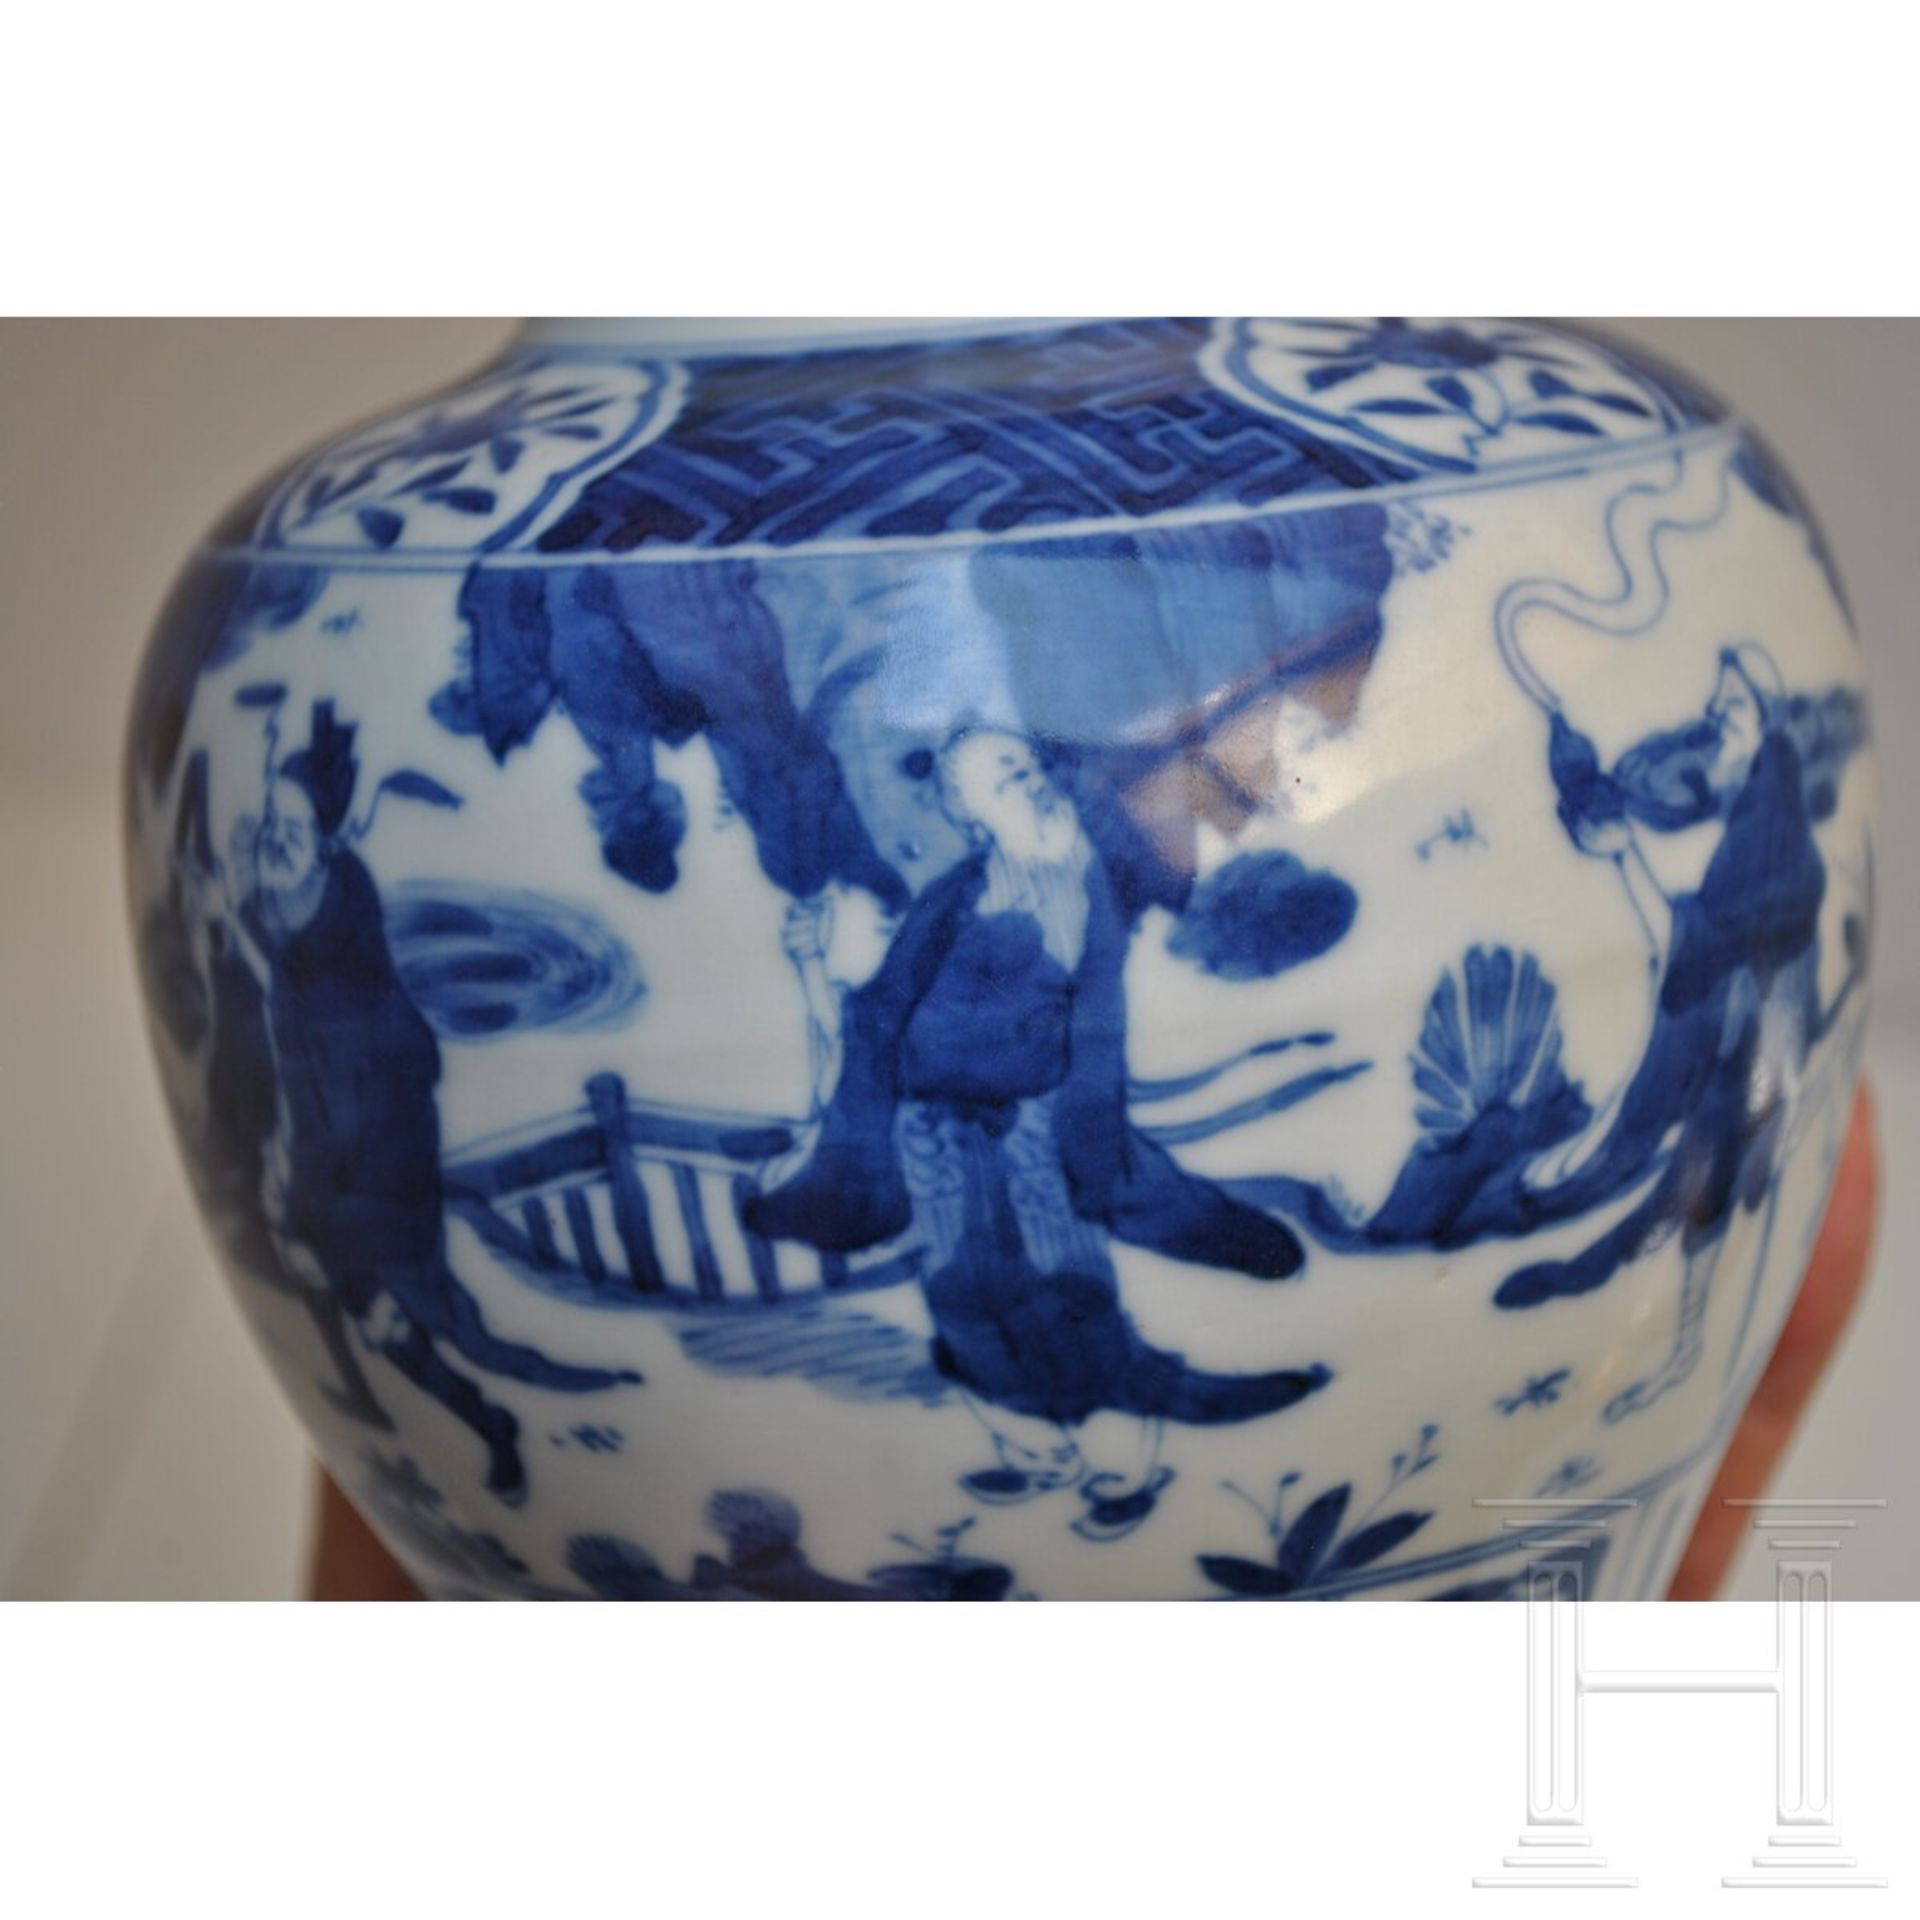 Blau-weiße Vase mit figürlicher Szene mit Wanli-Sechszeichenmarke, China, wahrscheinlich aus dieser - Image 12 of 18